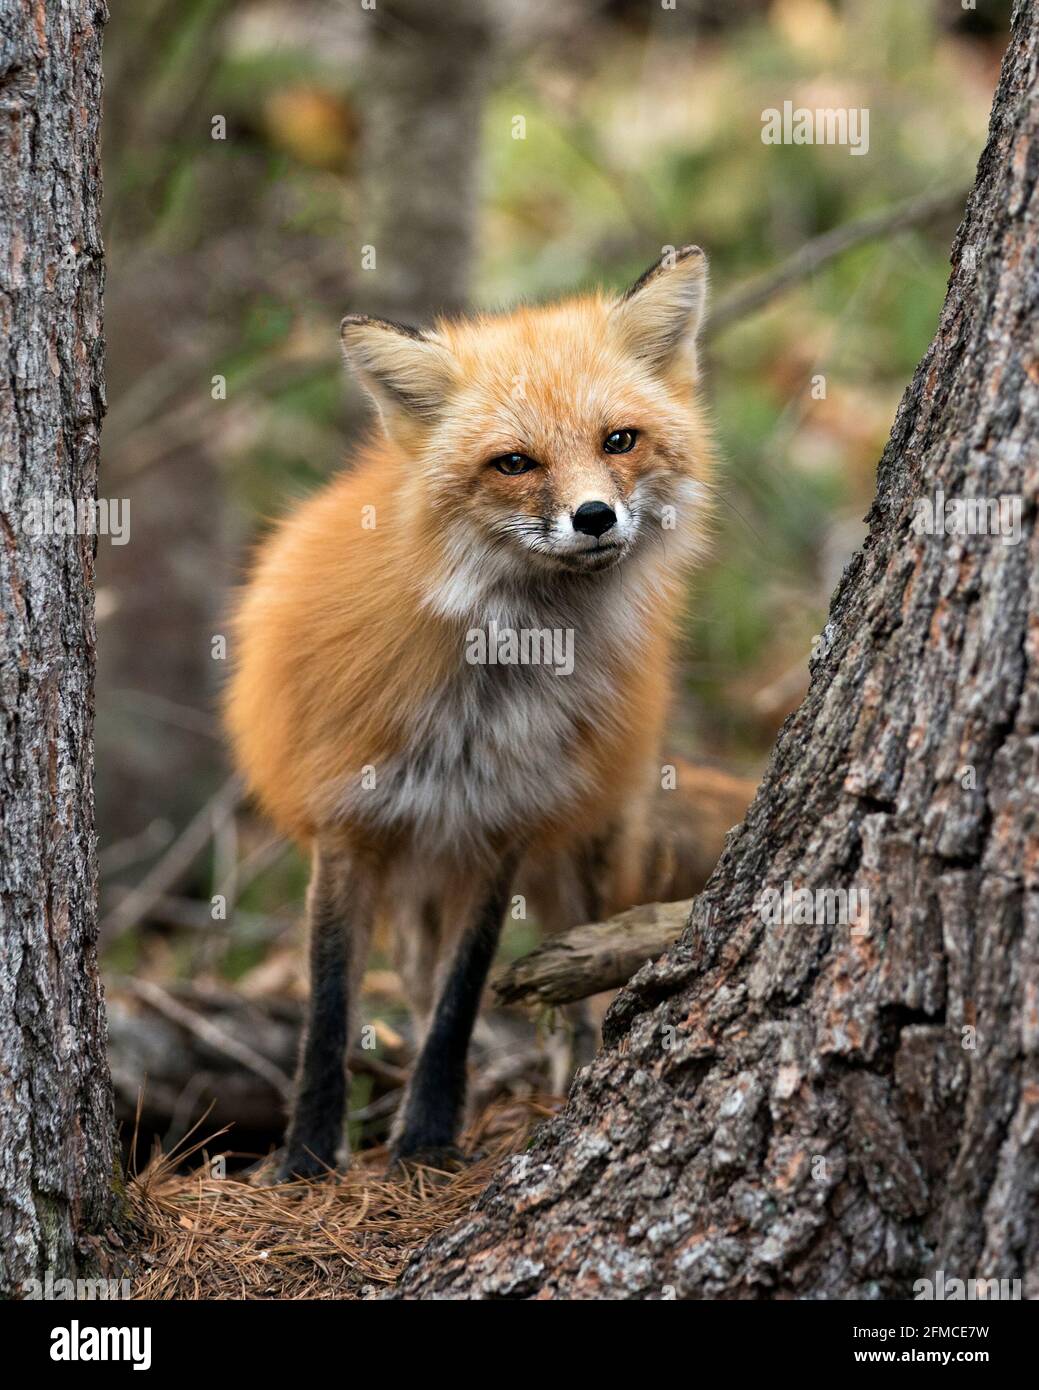 Vista ravvicinata della testa di Red Fox tra gli alberi e guardando la fotocamera con uno sfondo sfocato. Immagine. Verticale. Foto. Immagine FOX. Colpo di testa. Foto Stock